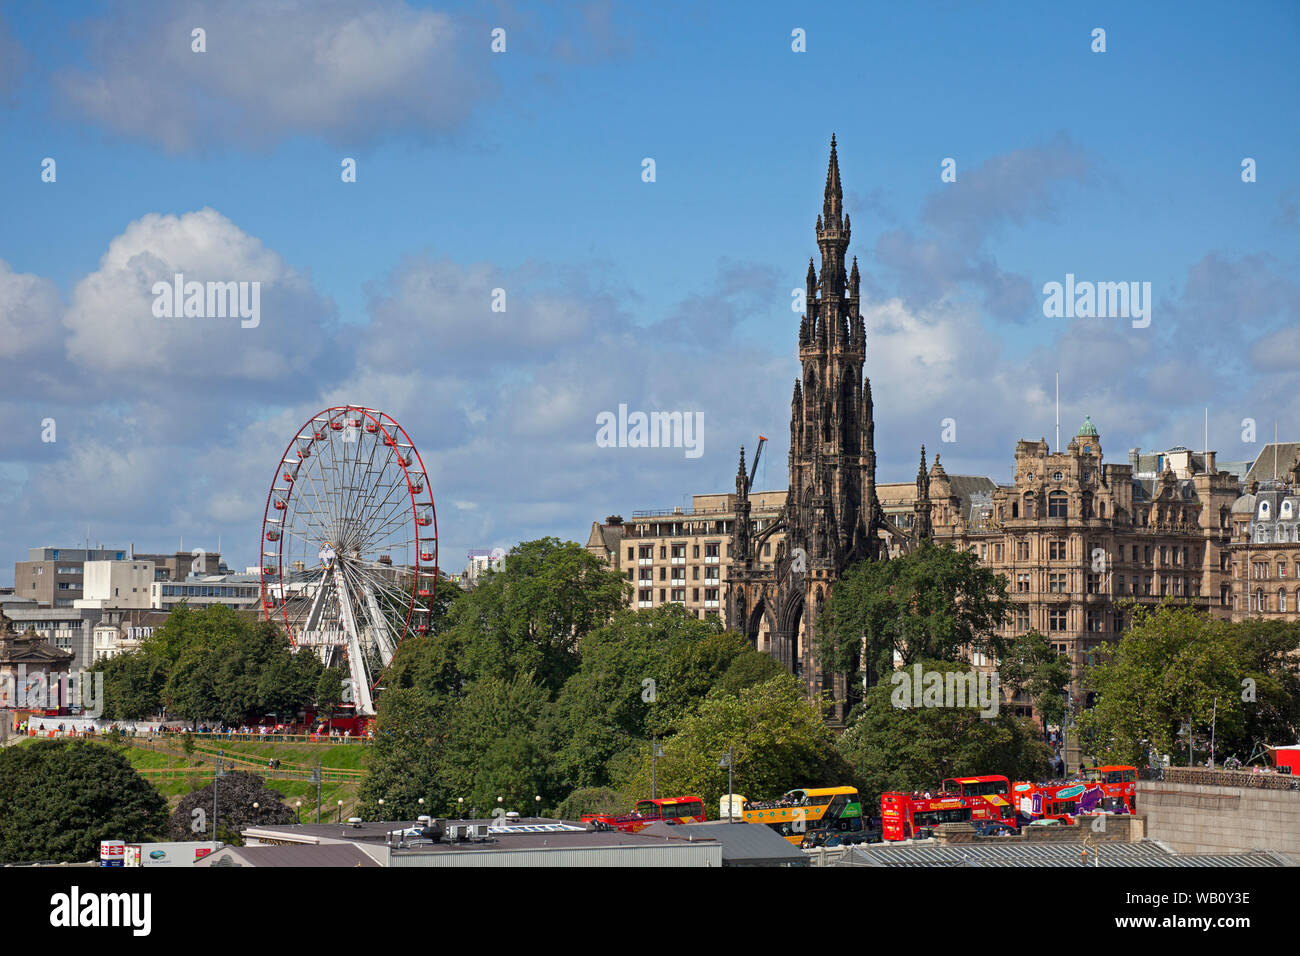 Edinburgh, Stadtzentrum, Blick von der North Bridge in Richtung der Princes Street, das Scott Monument und das große Rad in den Gärten. Stockfoto